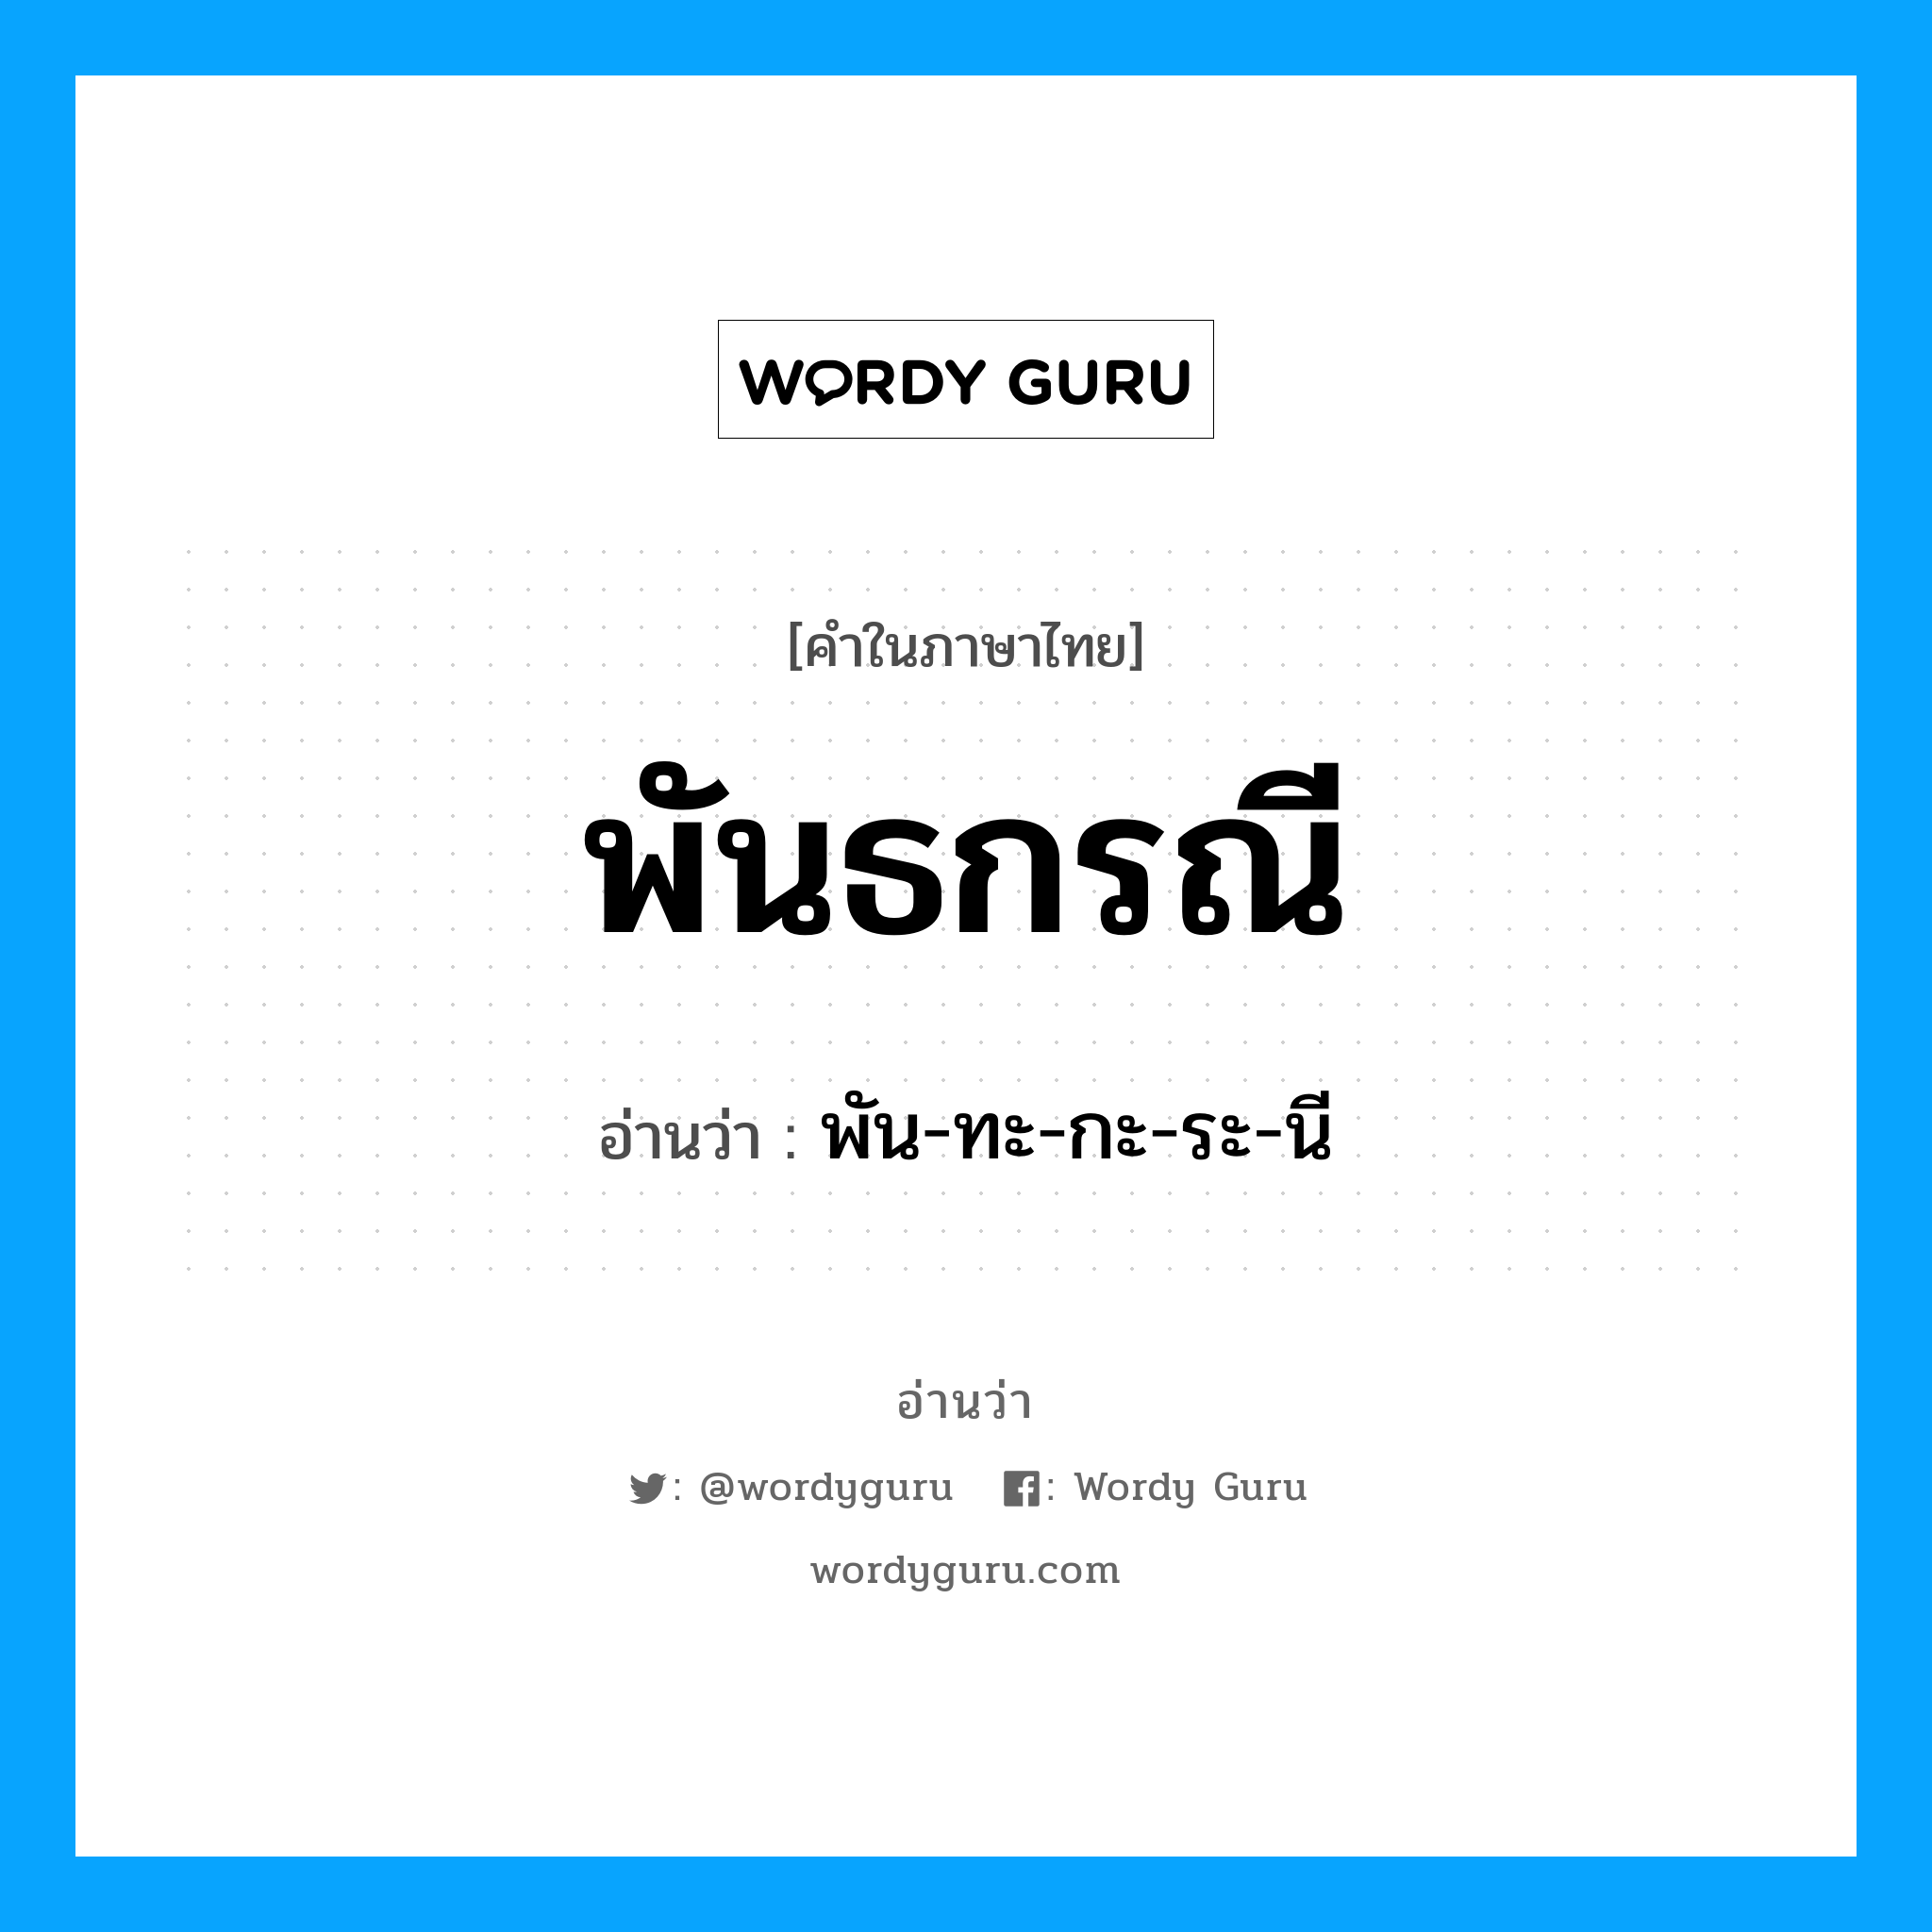 พัน-ทะ-กะ-ระ-นี เป็นคำอ่านของคำไหน?, คำในภาษาไทย พัน-ทะ-กะ-ระ-นี อ่านว่า พันธกรณี